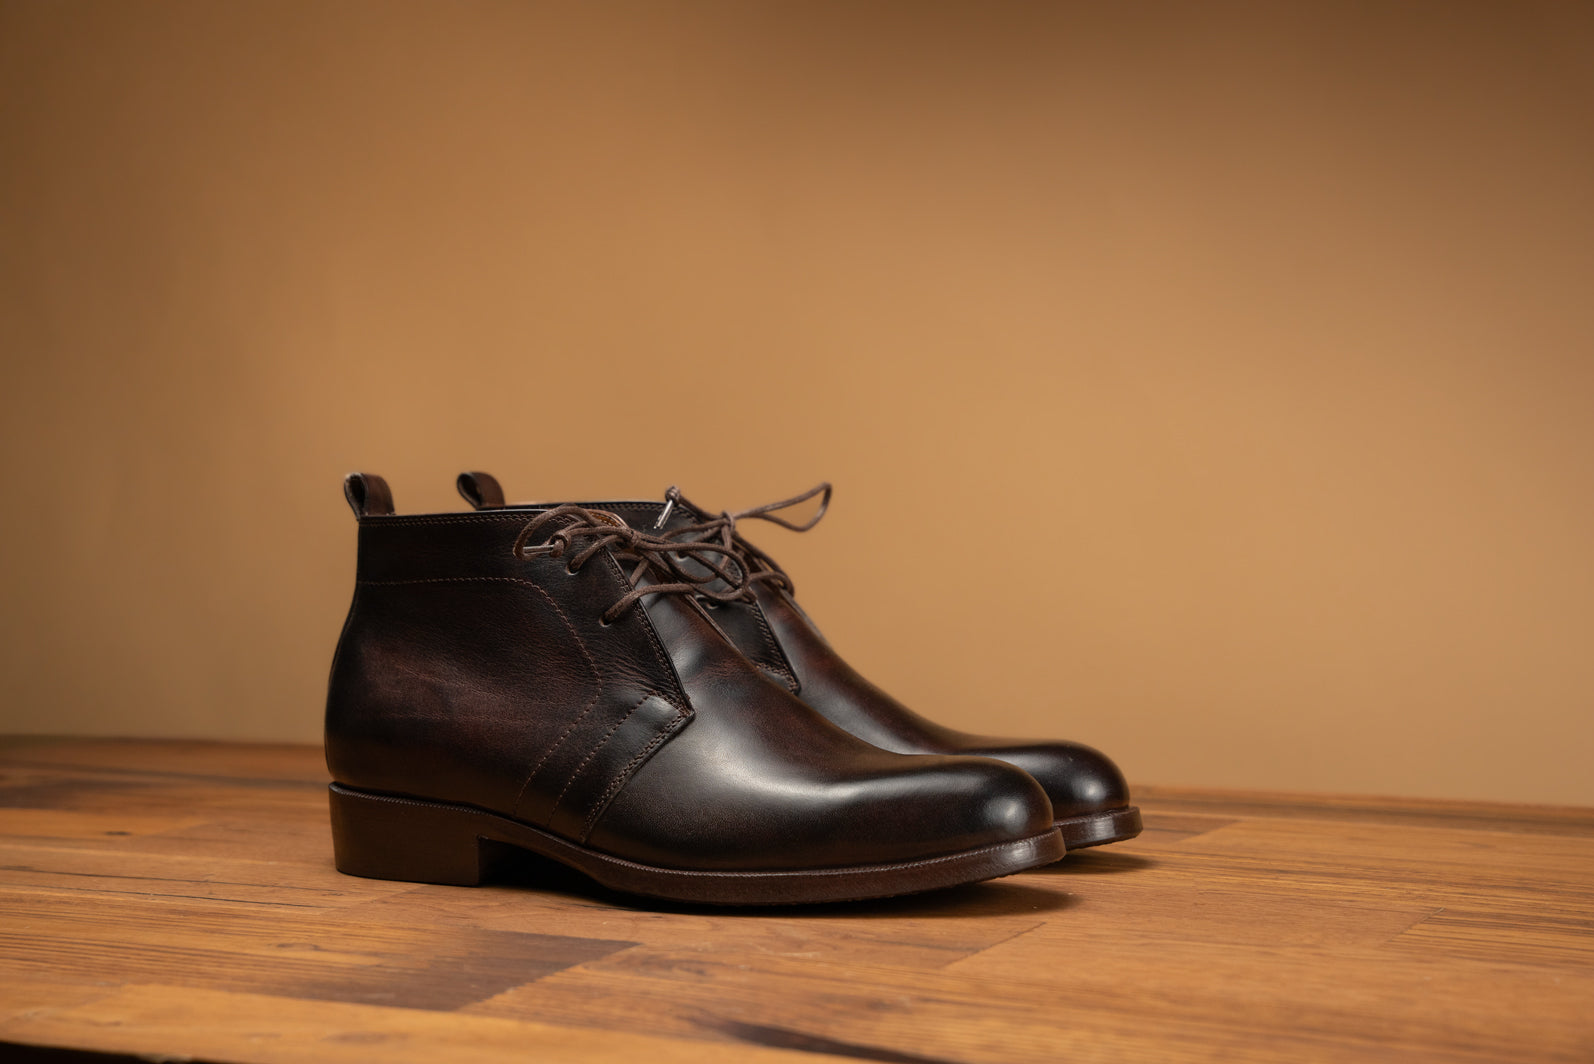 Bosphorus Leather Chukka Boots - Gulf 202